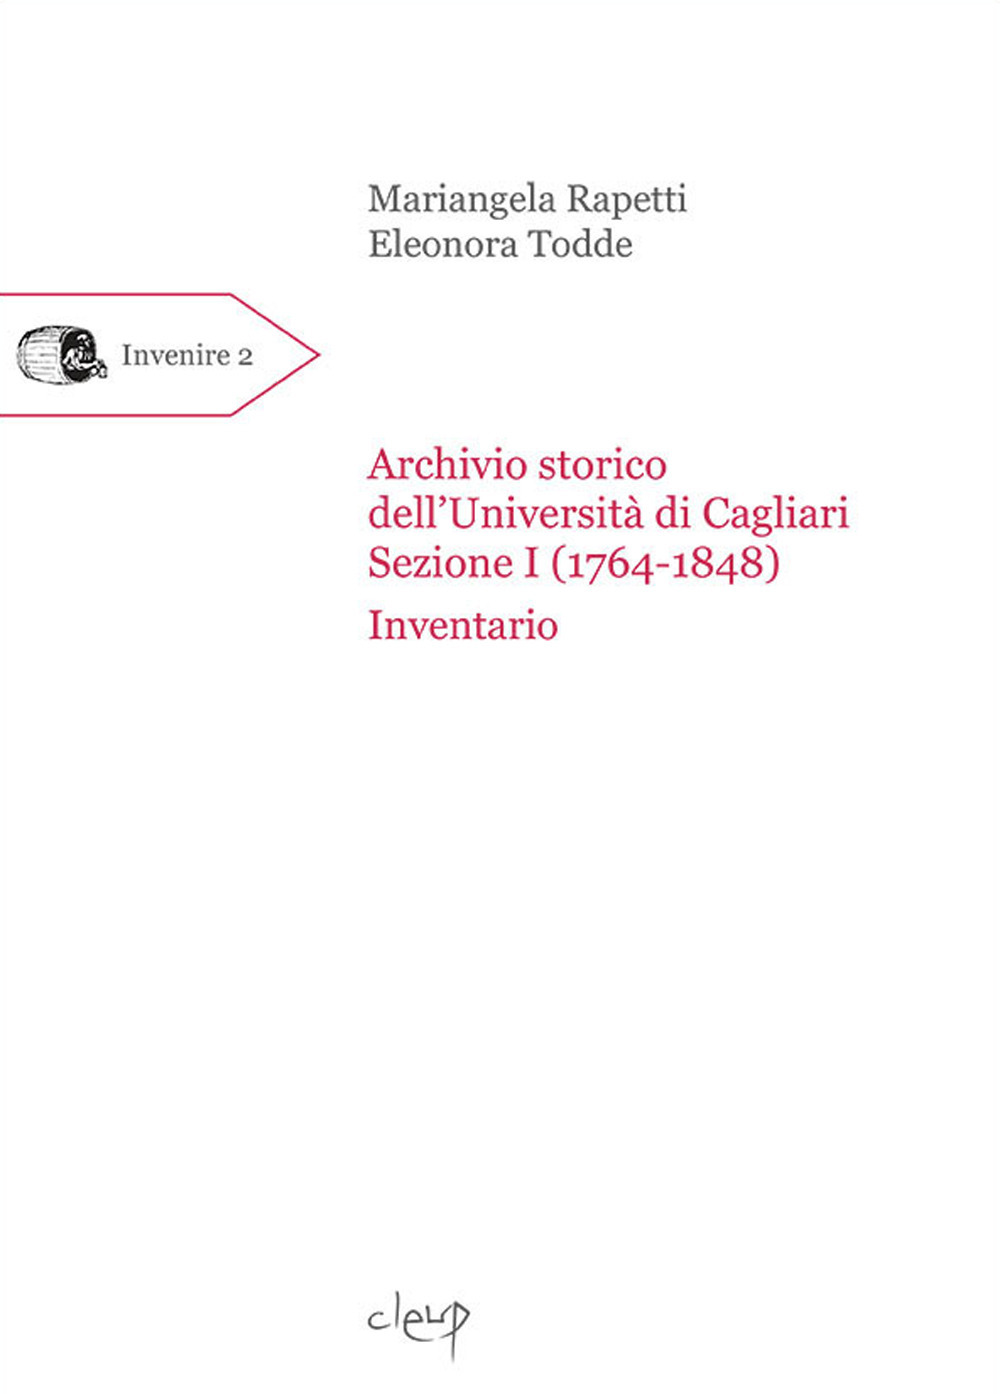 Archivio storico dell'Università di Cagliari. Sezione I (1764-1848). Inventario